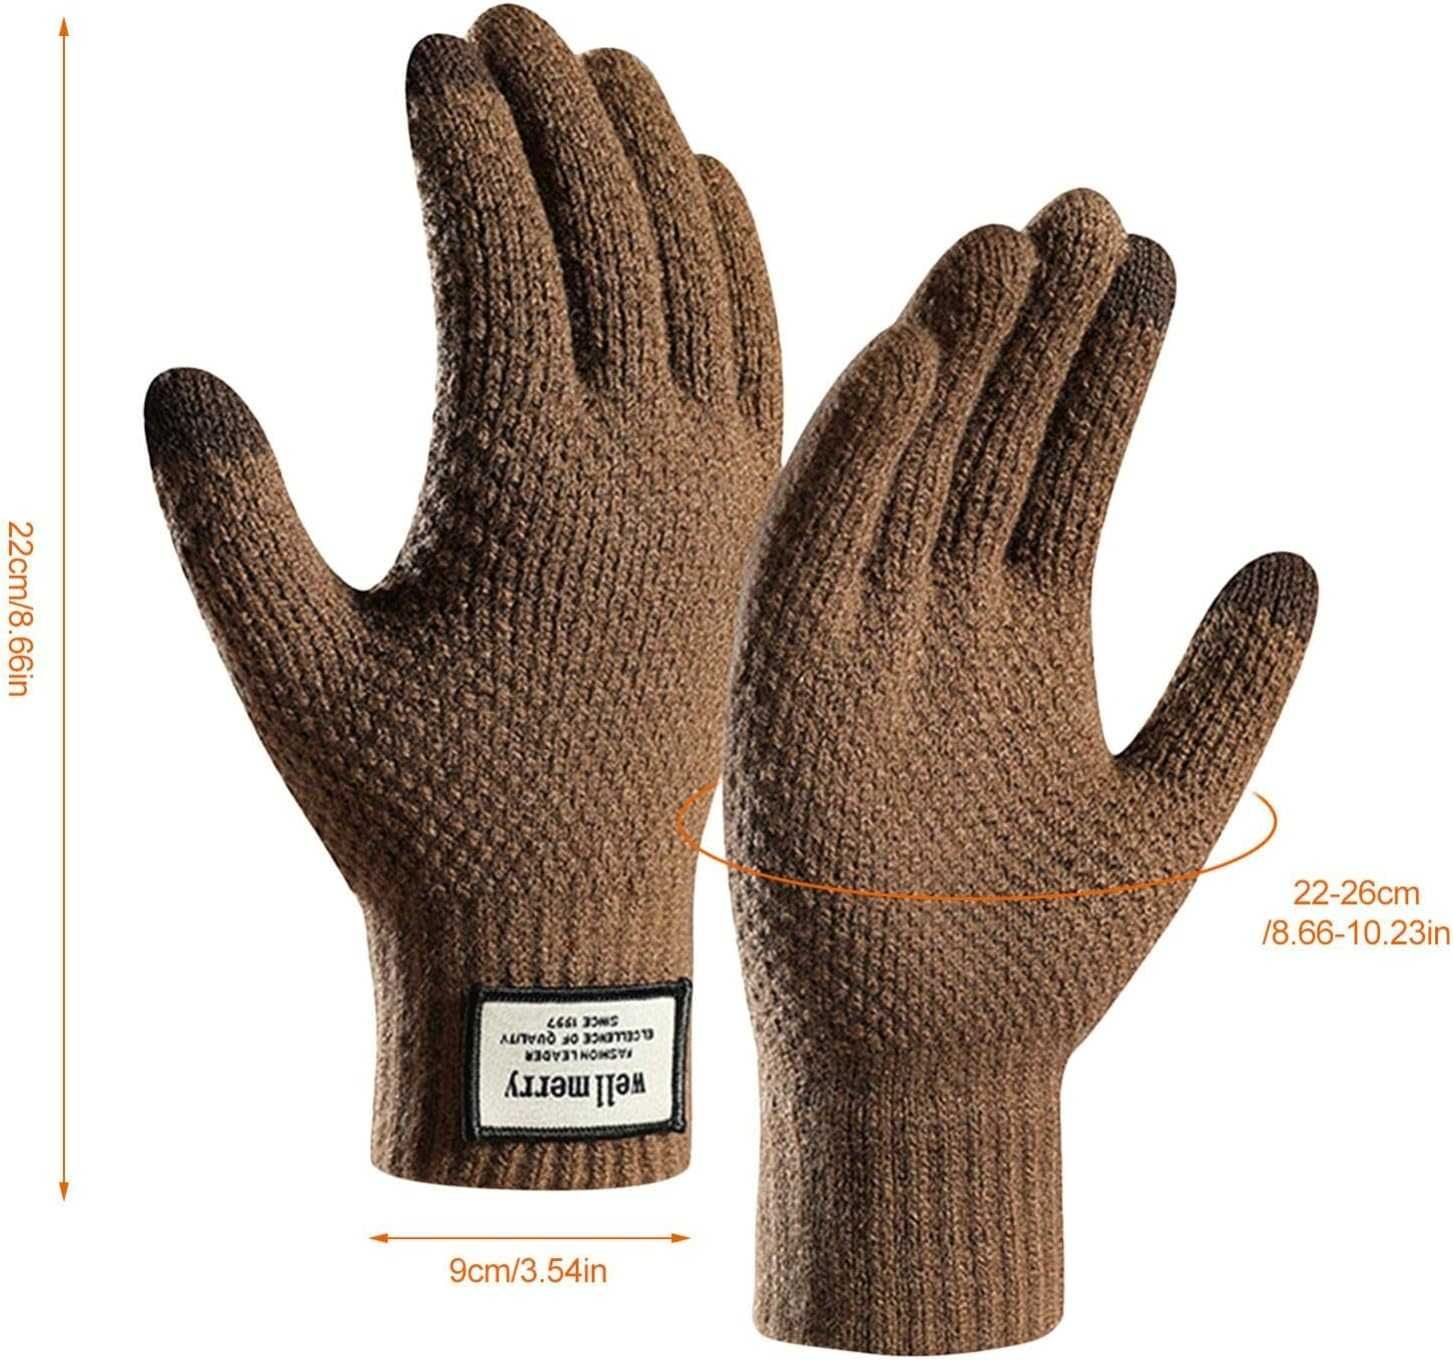 zimowe rękawiczki dla mężczyzn kobiet wyprzedaż 66Par!!